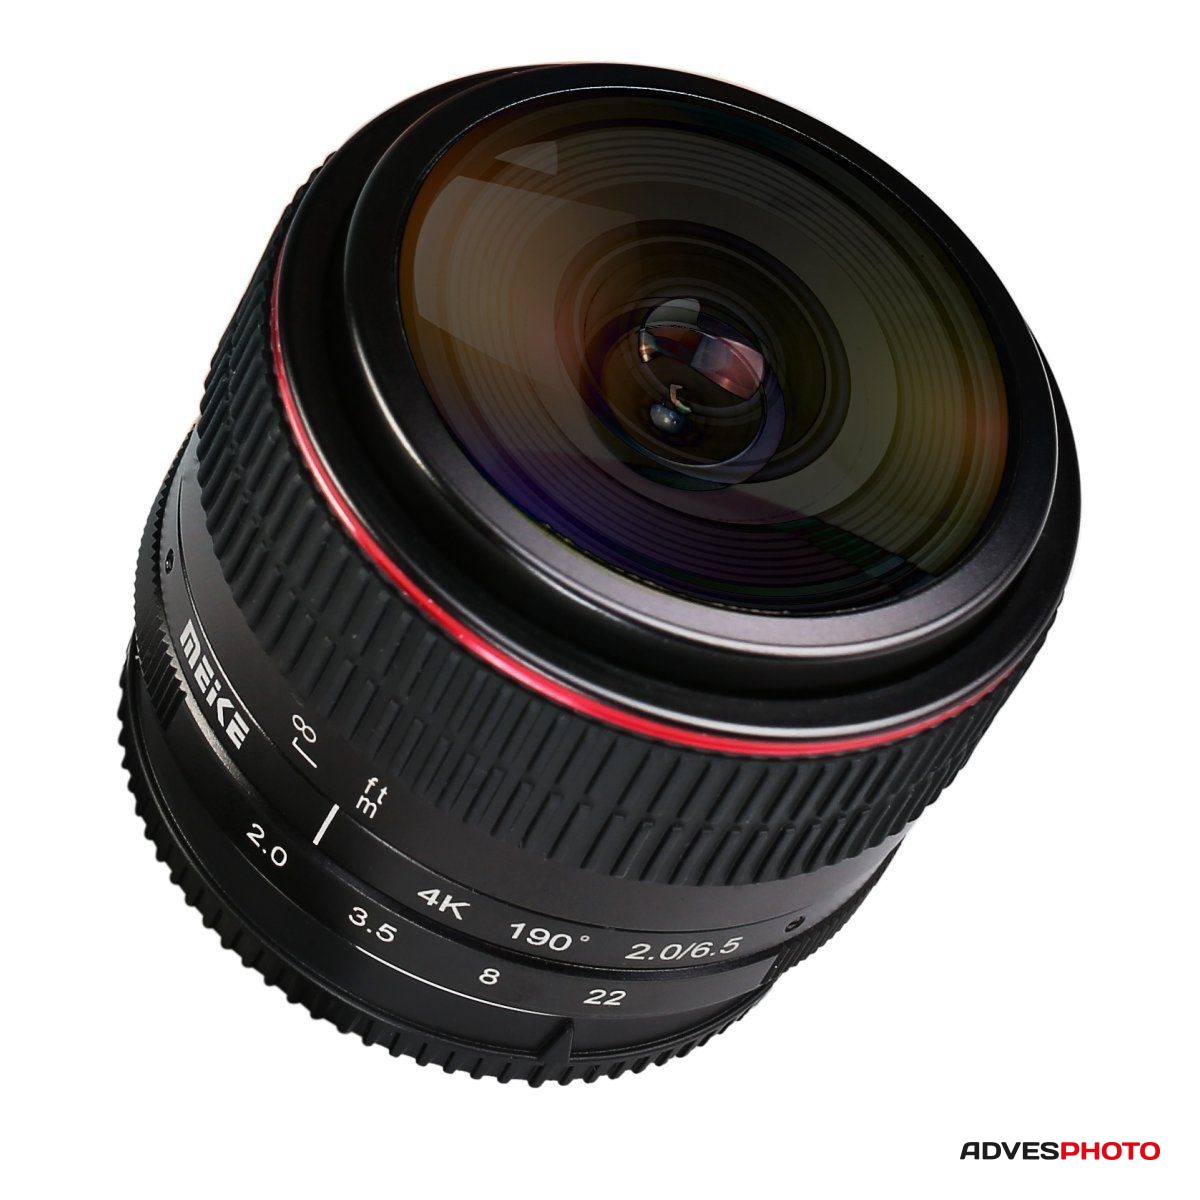 Meike 6,5mm f / 2.0 halszem objektív Sony E-mount tükör nélküli fényképezőgéphez